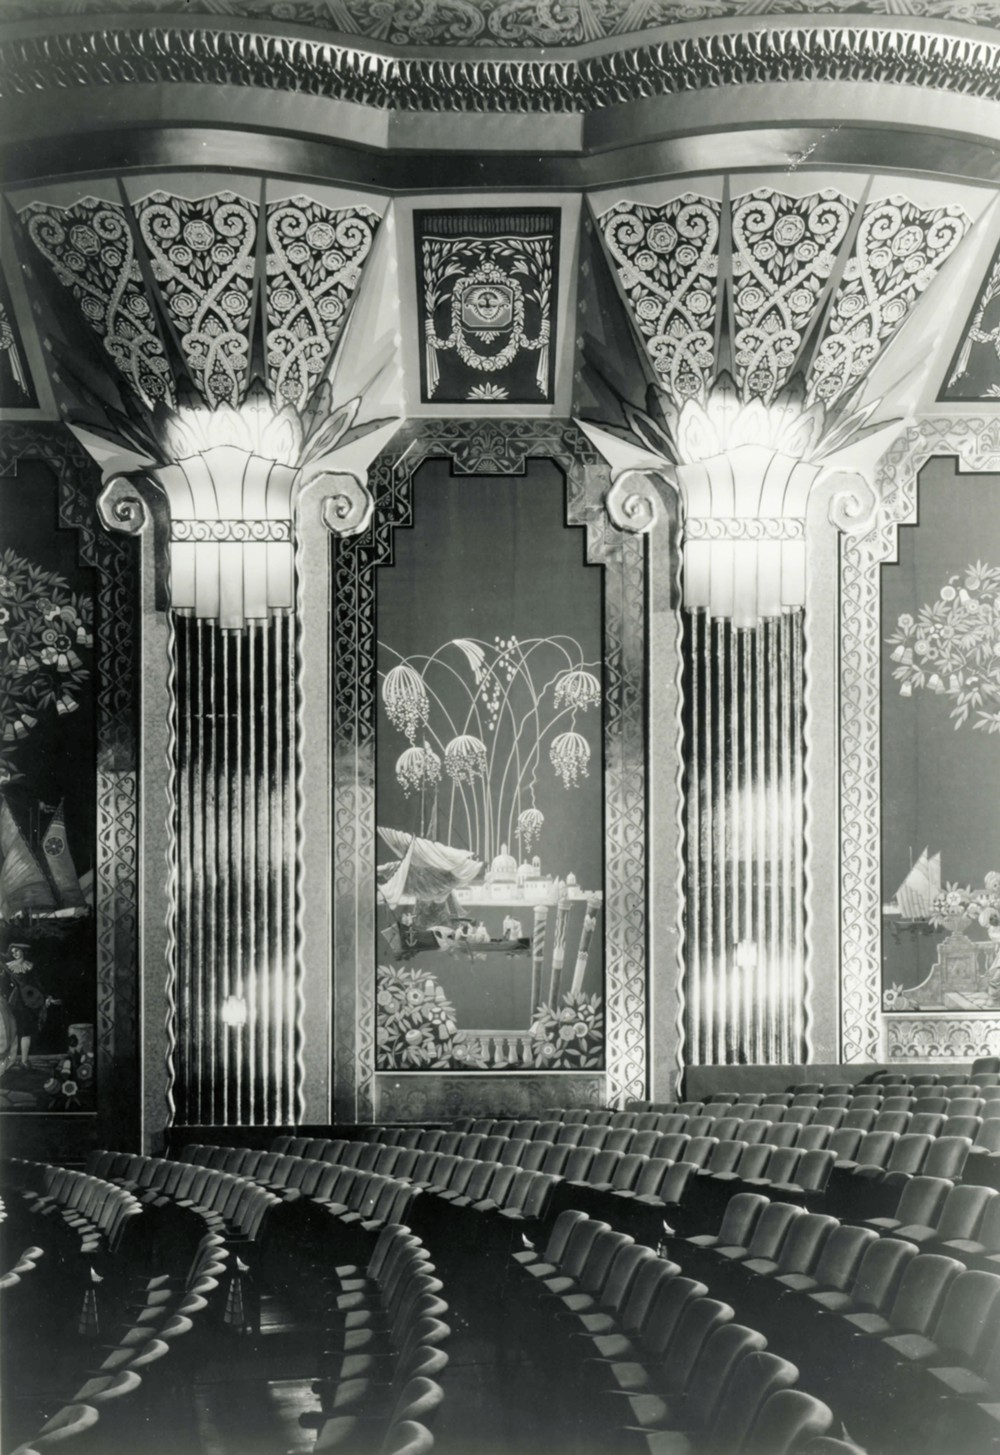 Paramount Theater, Aurora Illinois Columns and mural on interior auditorium wall (1978)